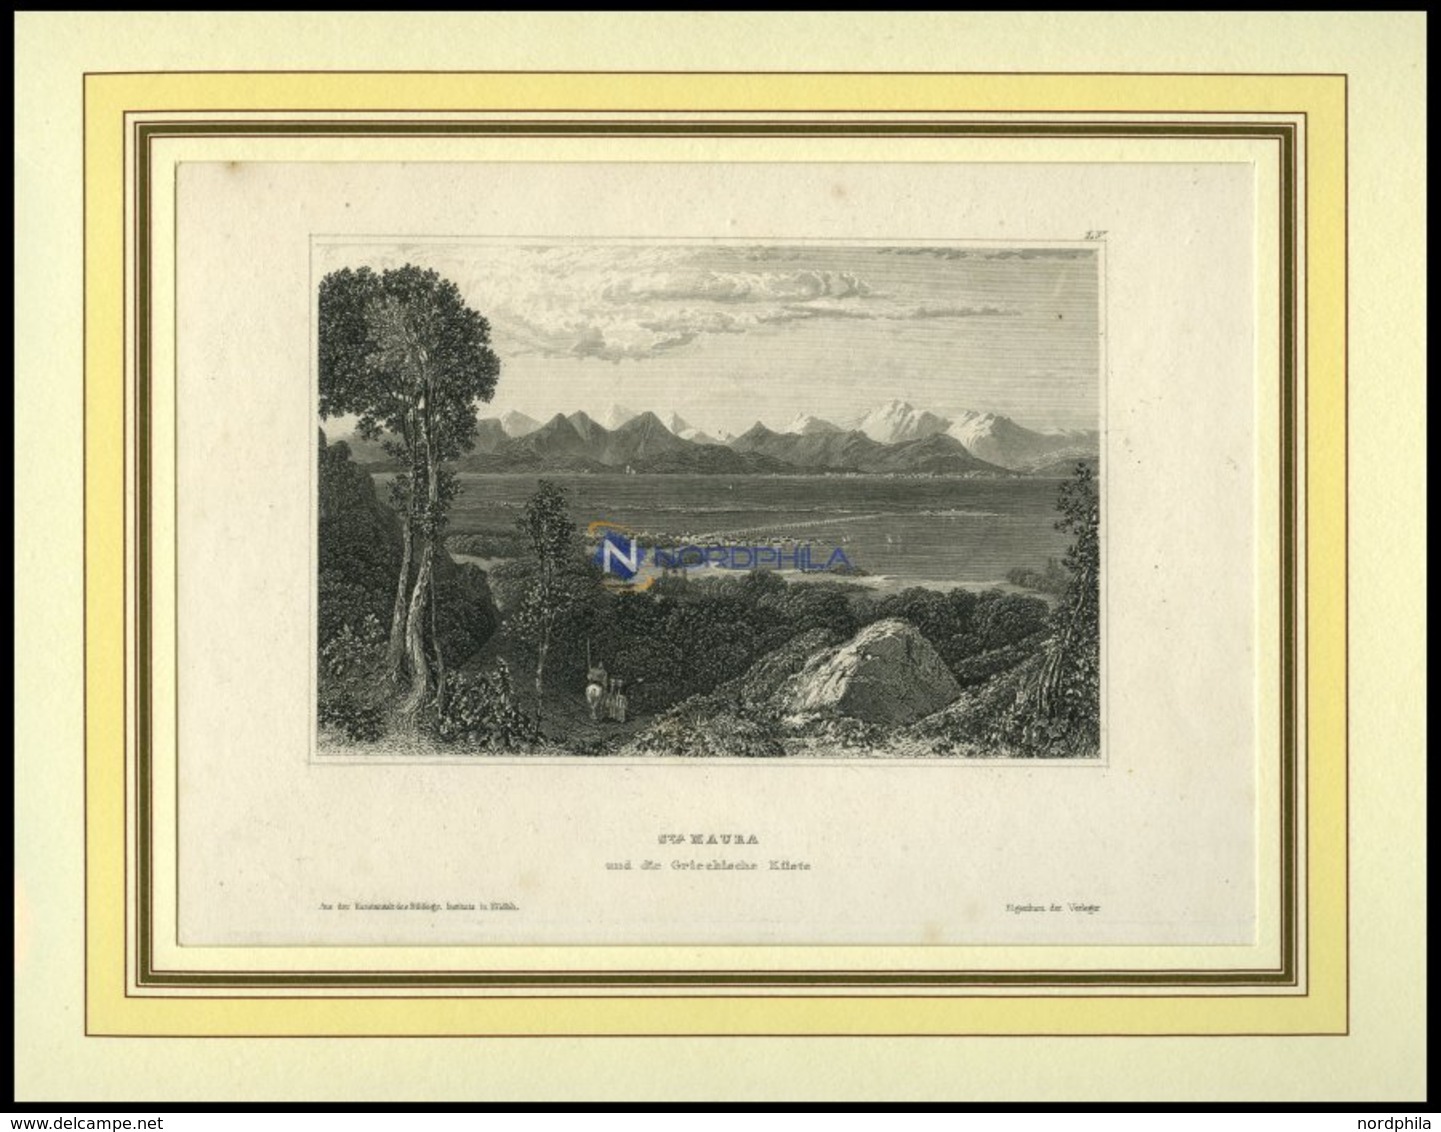 ST.MAURA Und Die Griechische Küste, Stahlstich Von B.I. Um 1840 - Litografia